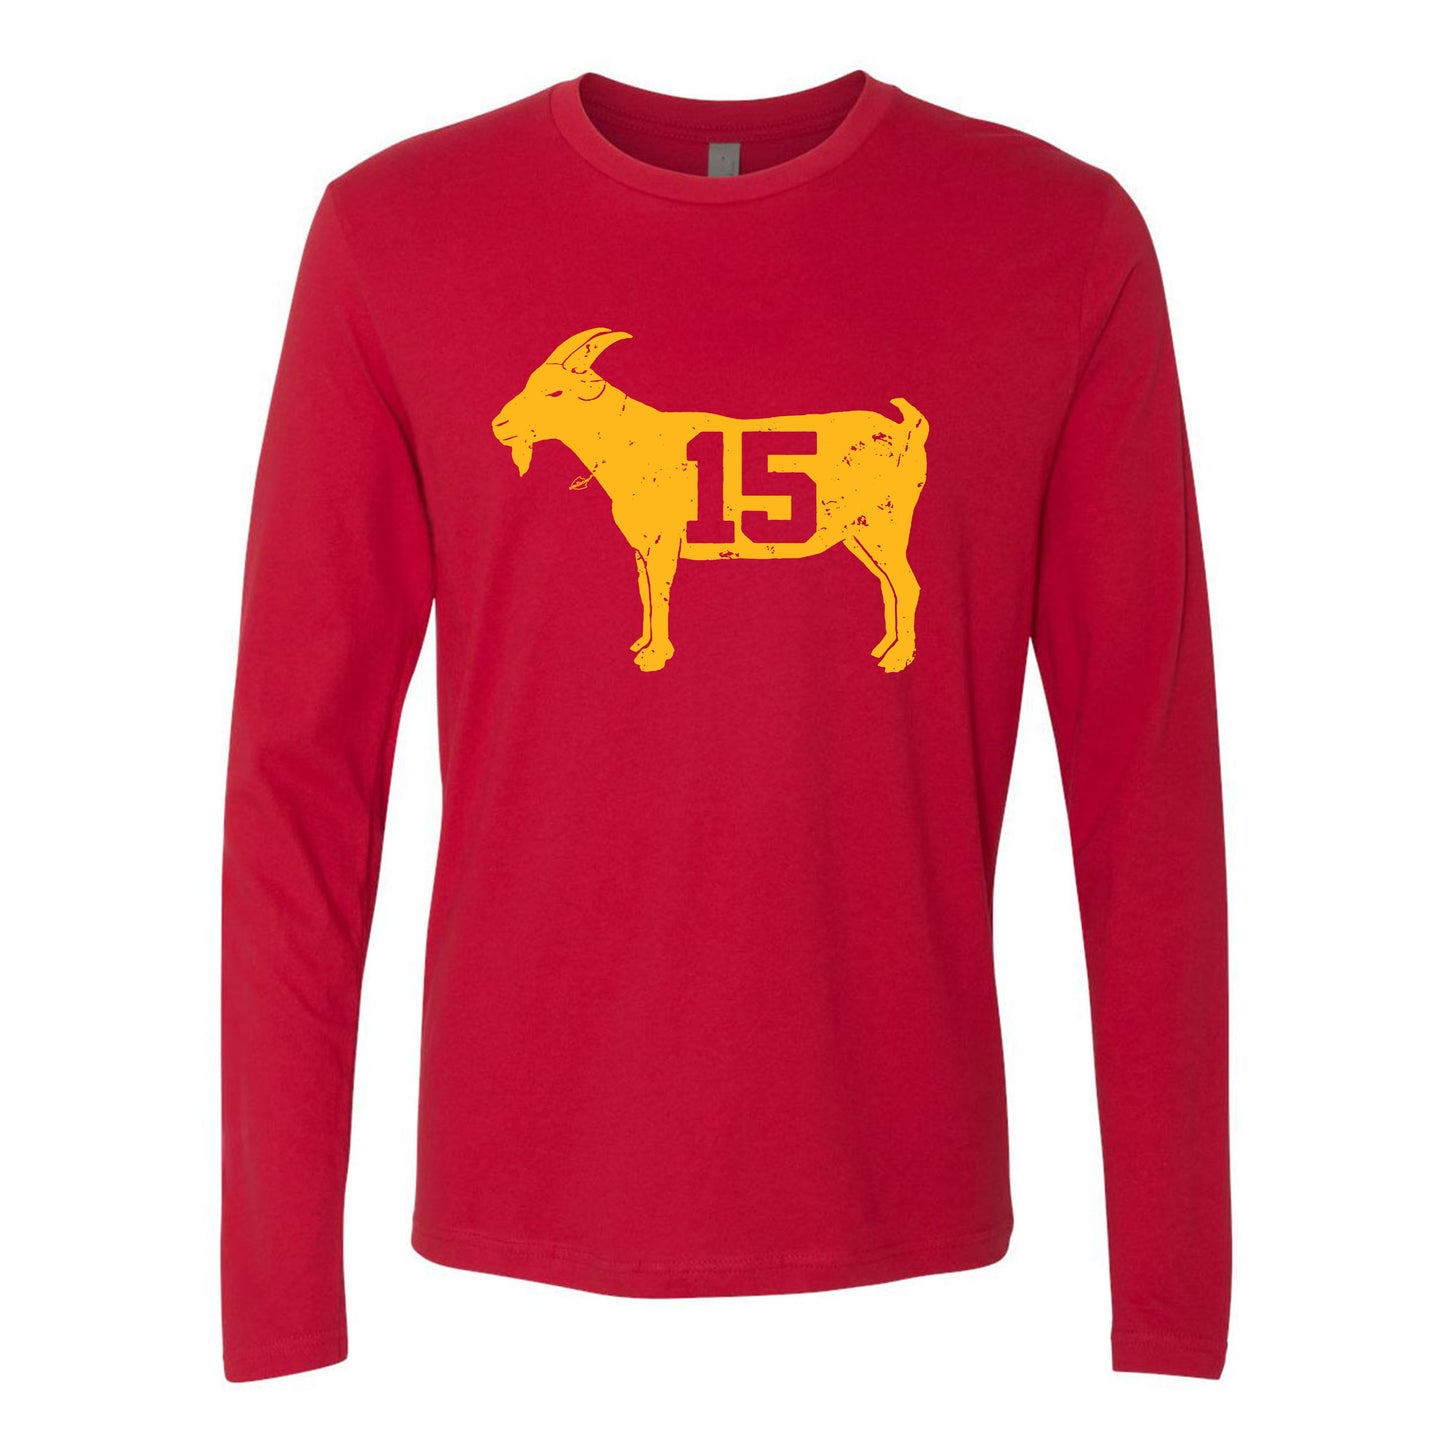 Goat 15 Vintage Kansas City Football Fans Shirt